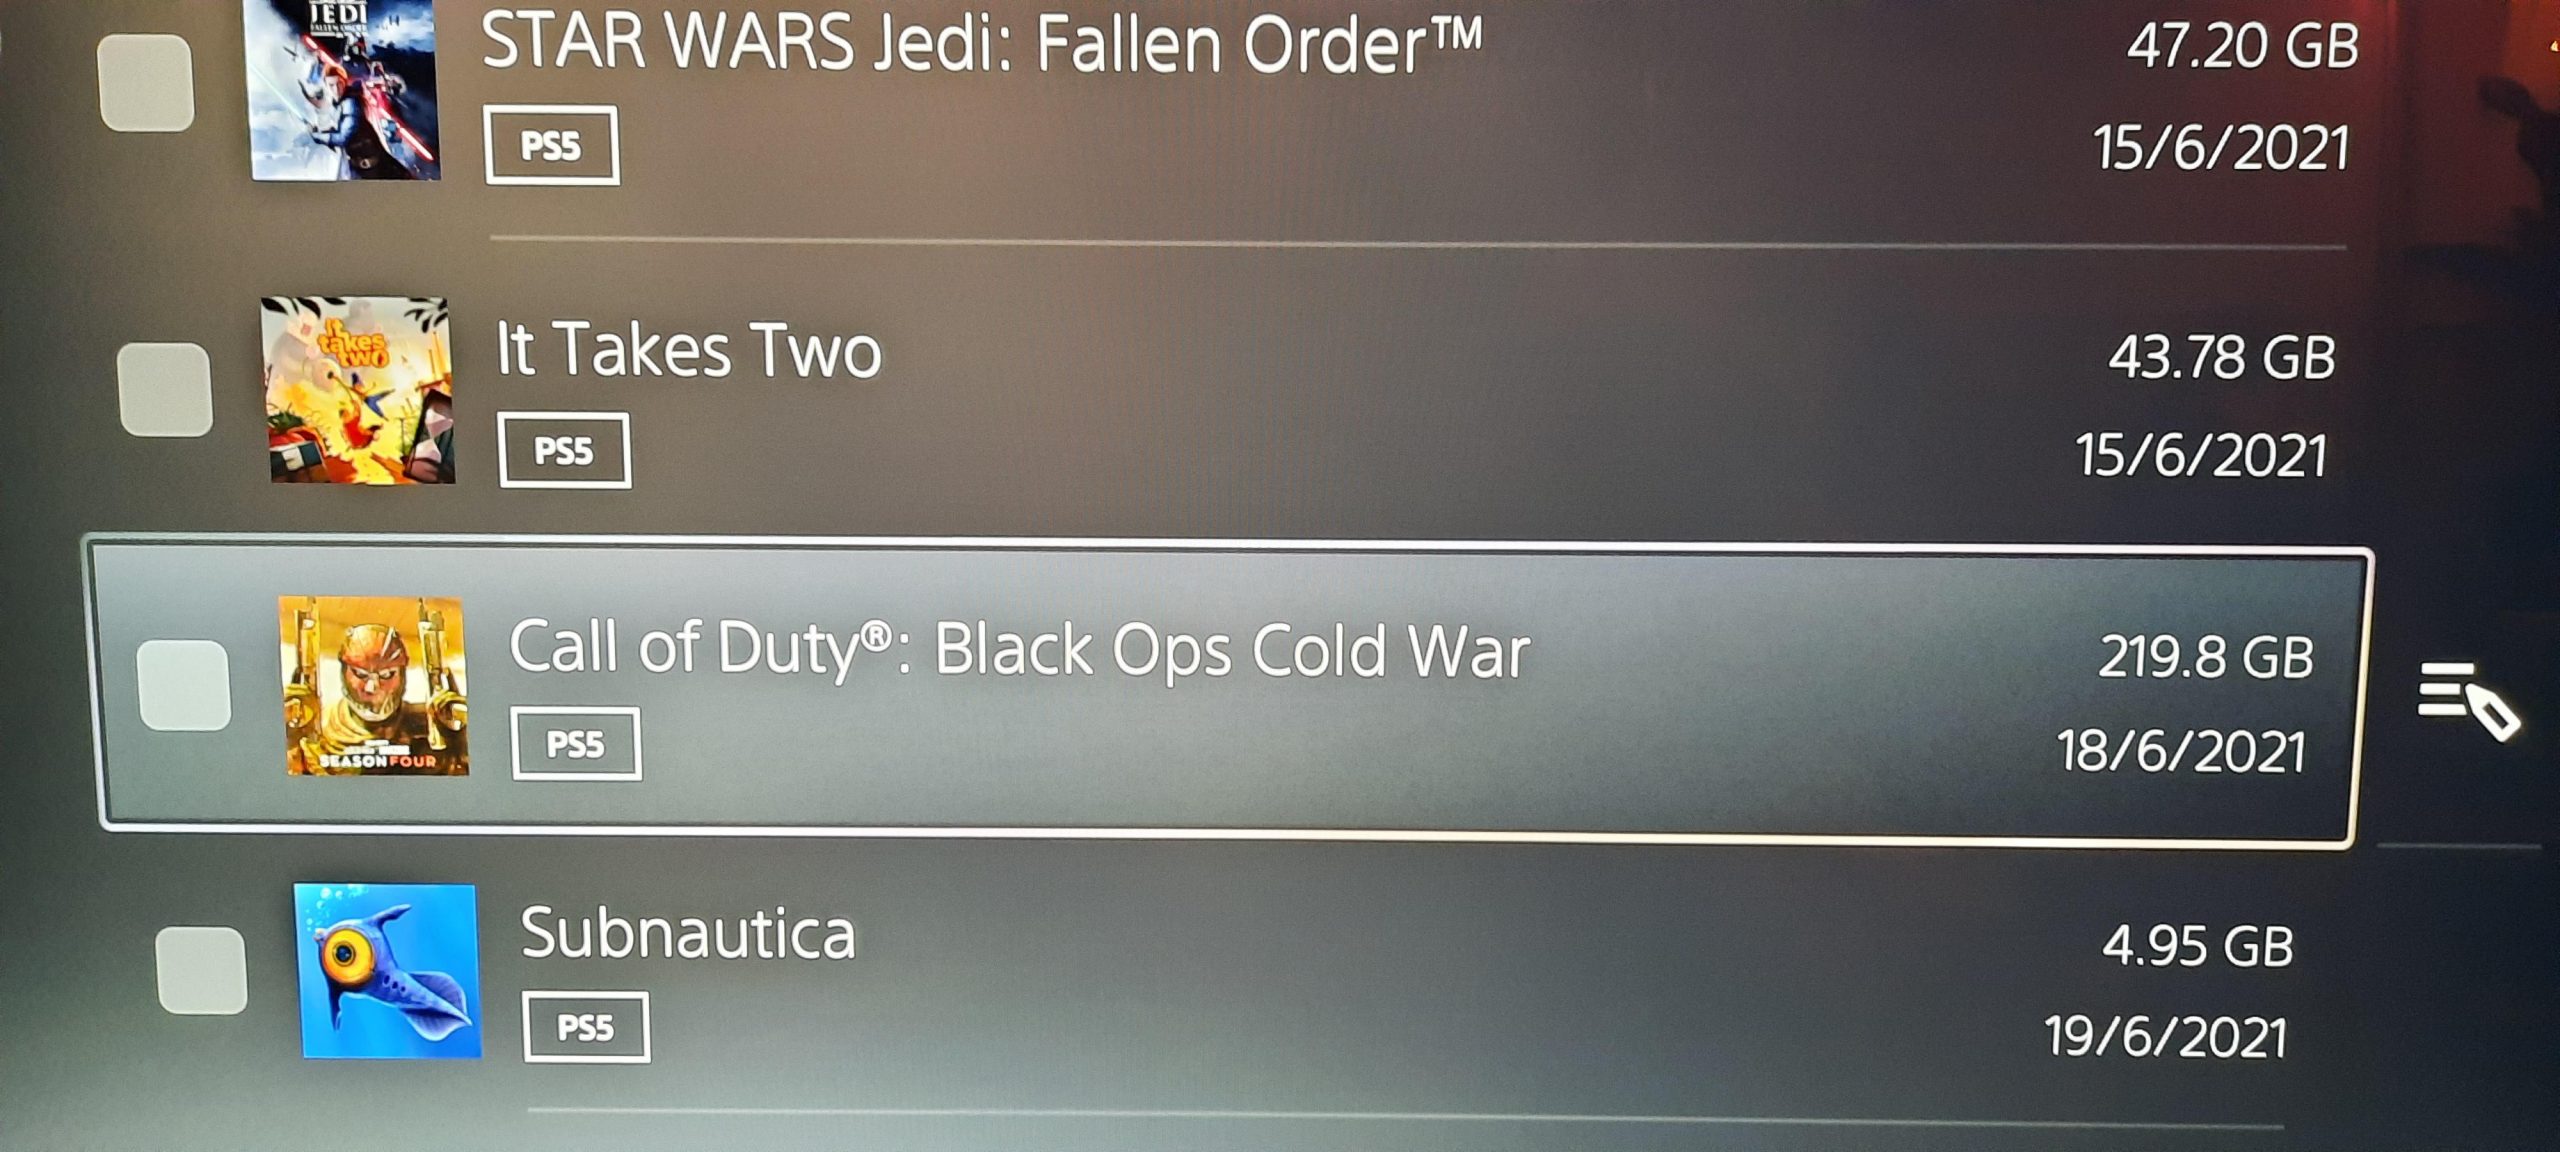 Call of Duty Black Ops Cold War kounye a plis pase 200 GB sou konsol yo